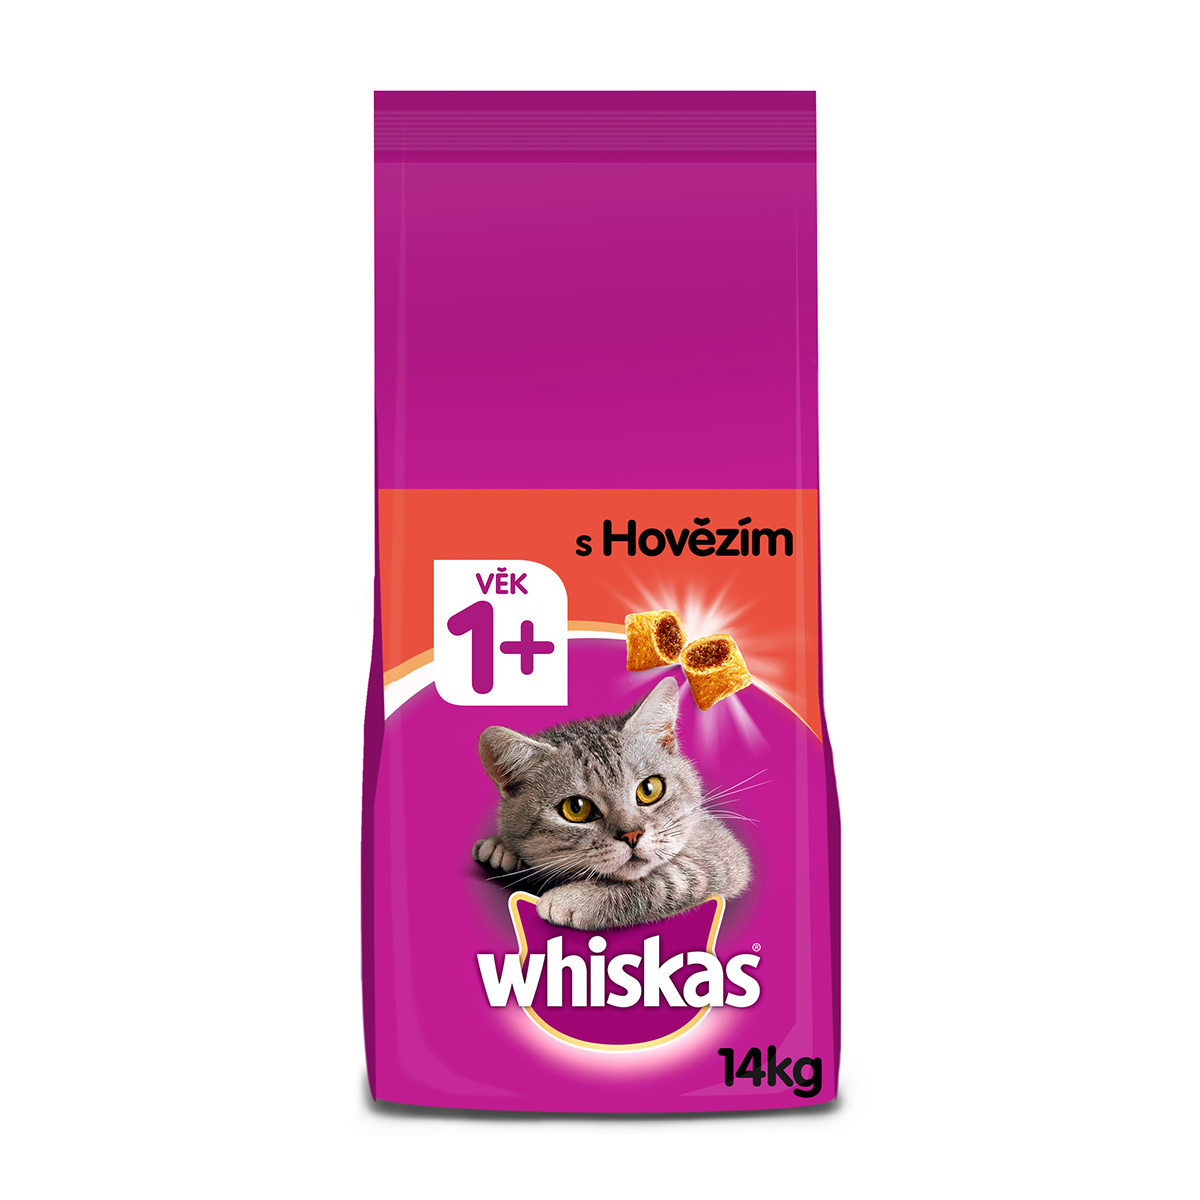 Whiskas granule s hovězím pro dospělé kočky 2x14kg